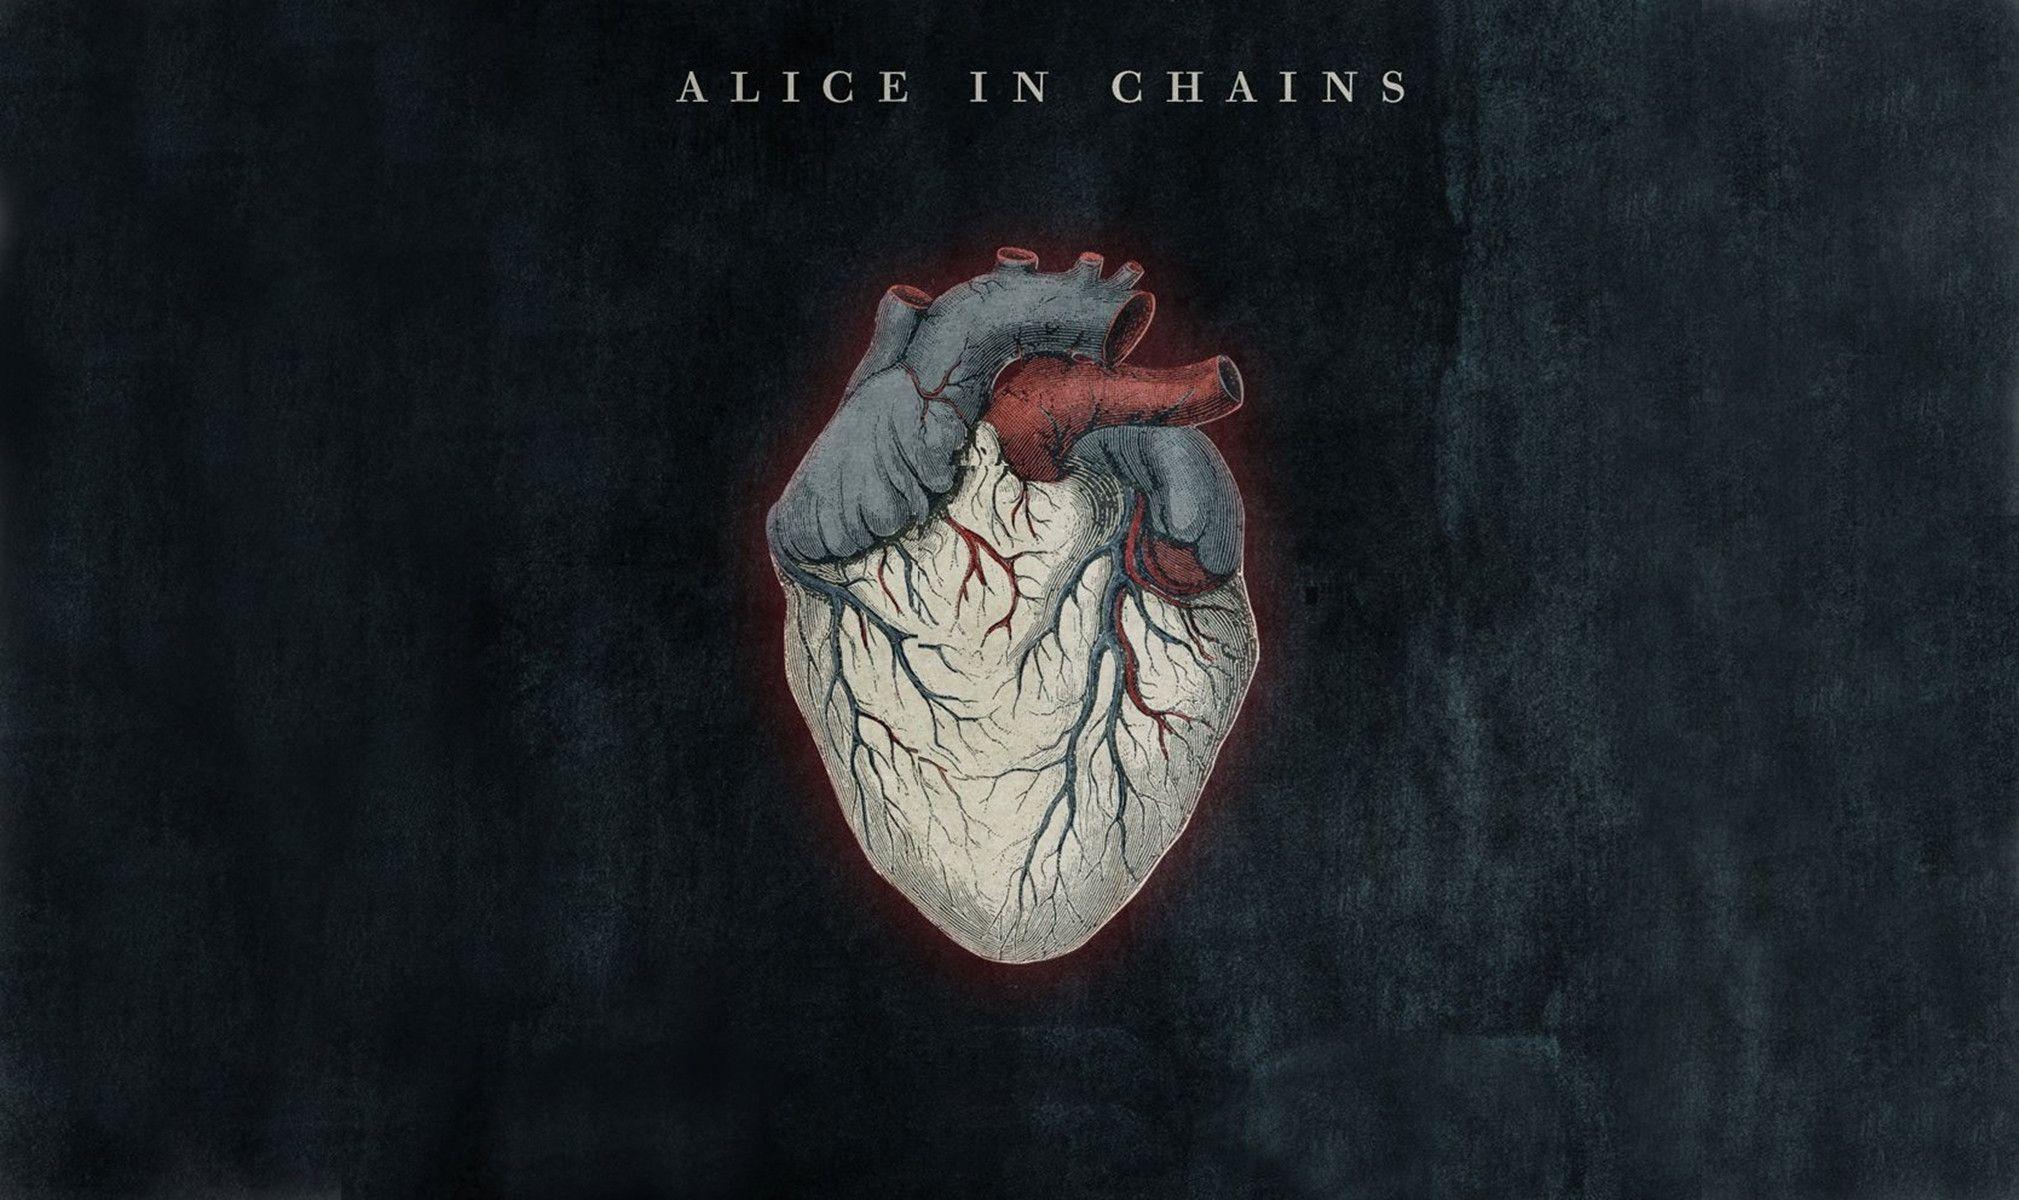 Allison chains